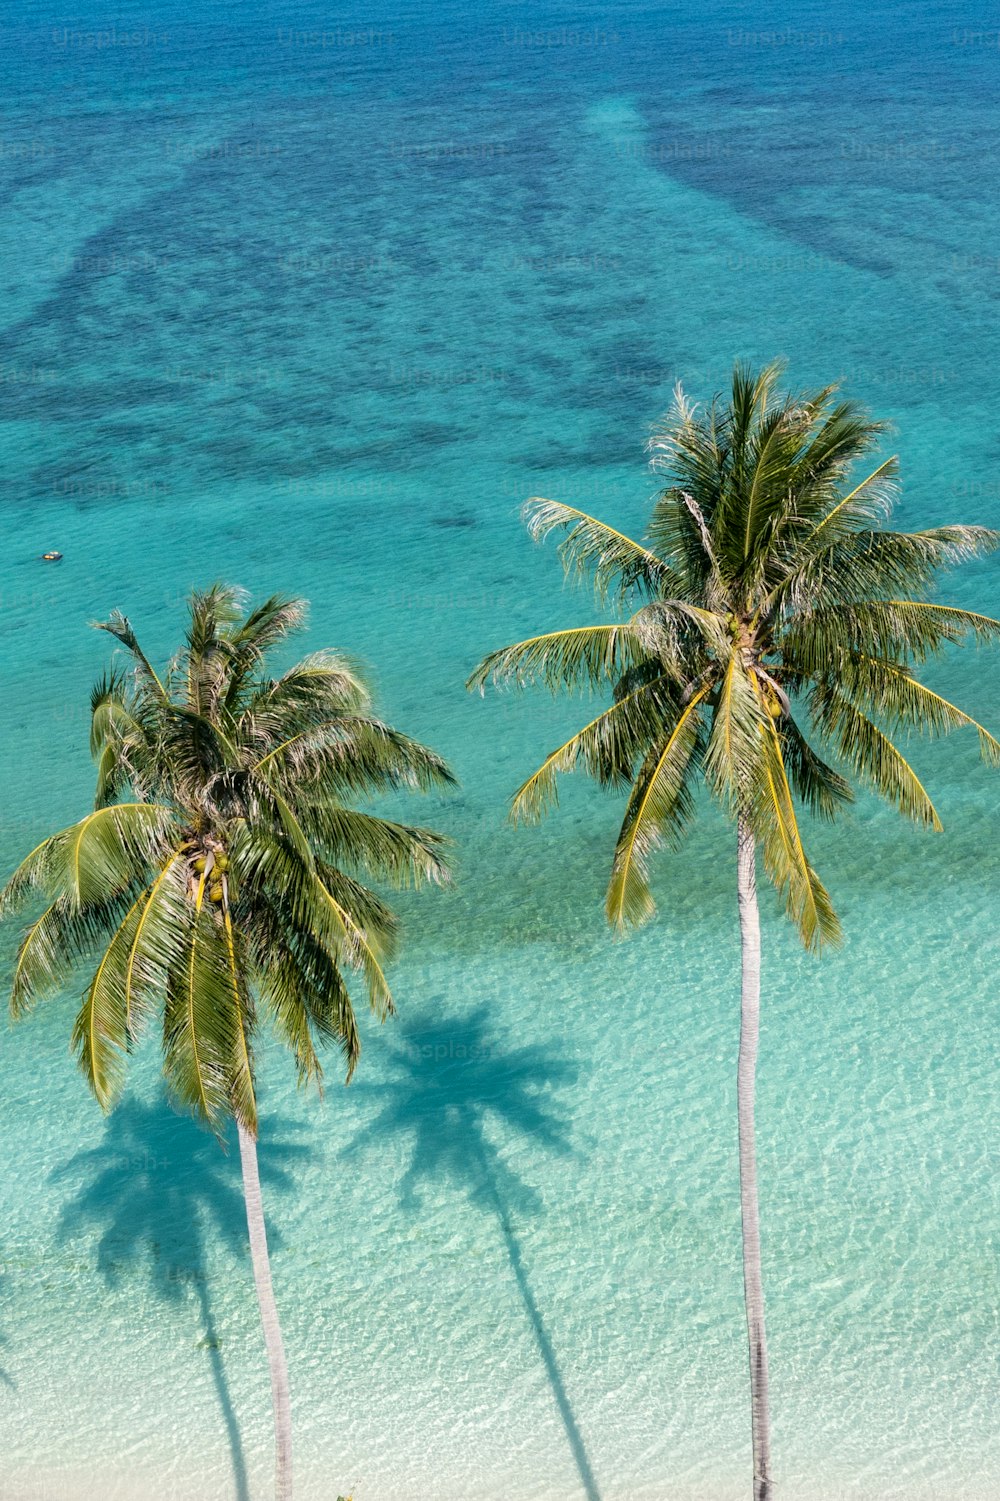 Deux palmiers sur une plage à l’eau bleue claire